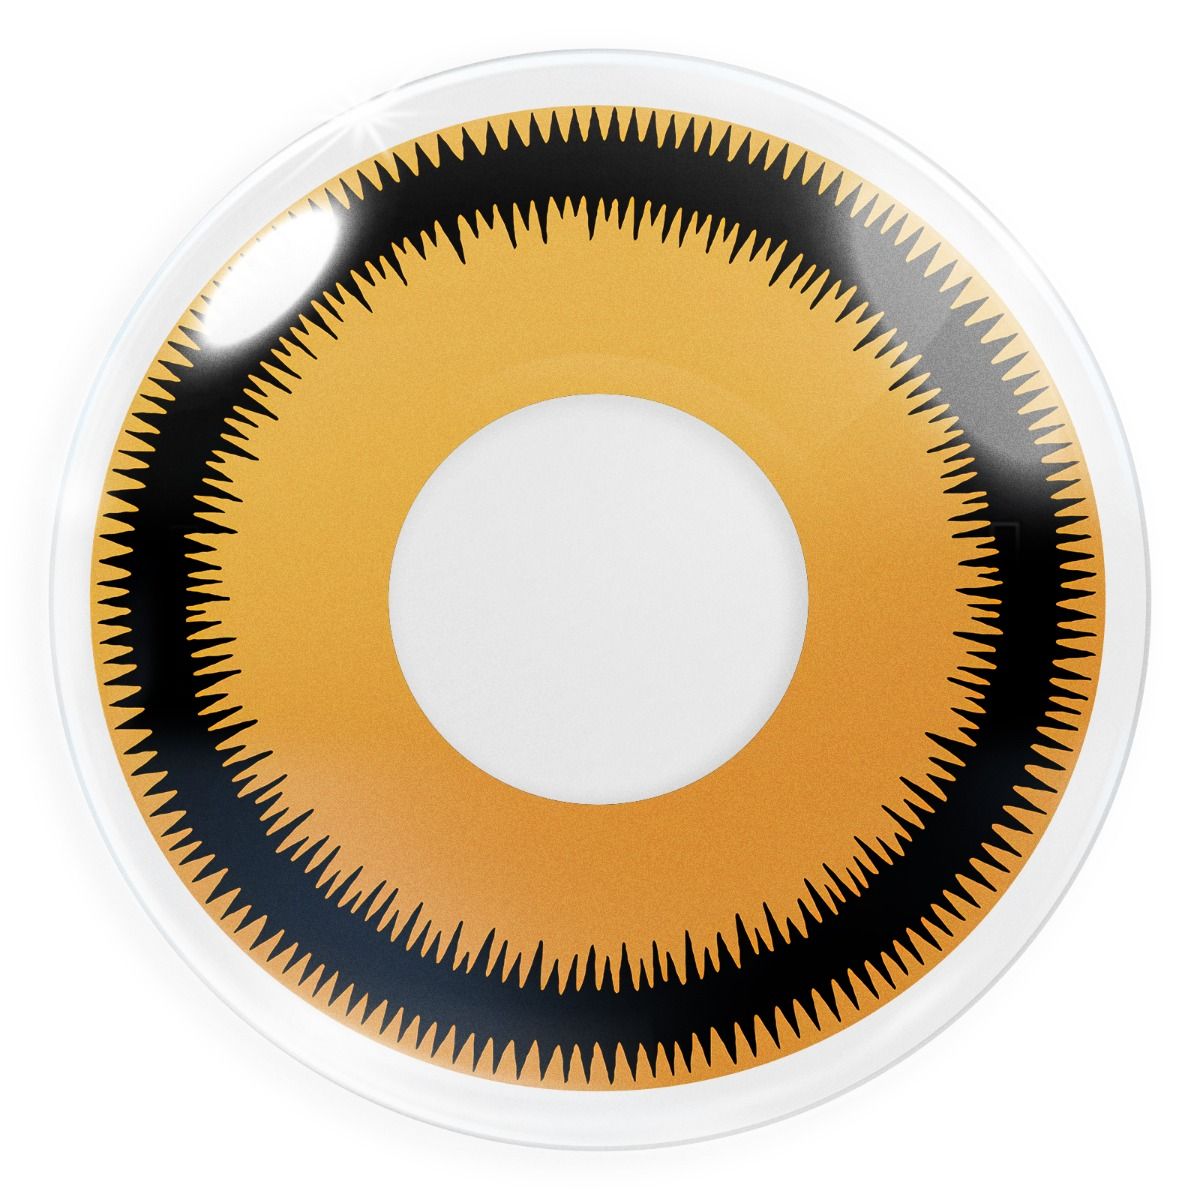 Orangefarbende Kontaktlinse Lunatic Sun mit schwarzem Rand von MeralenS